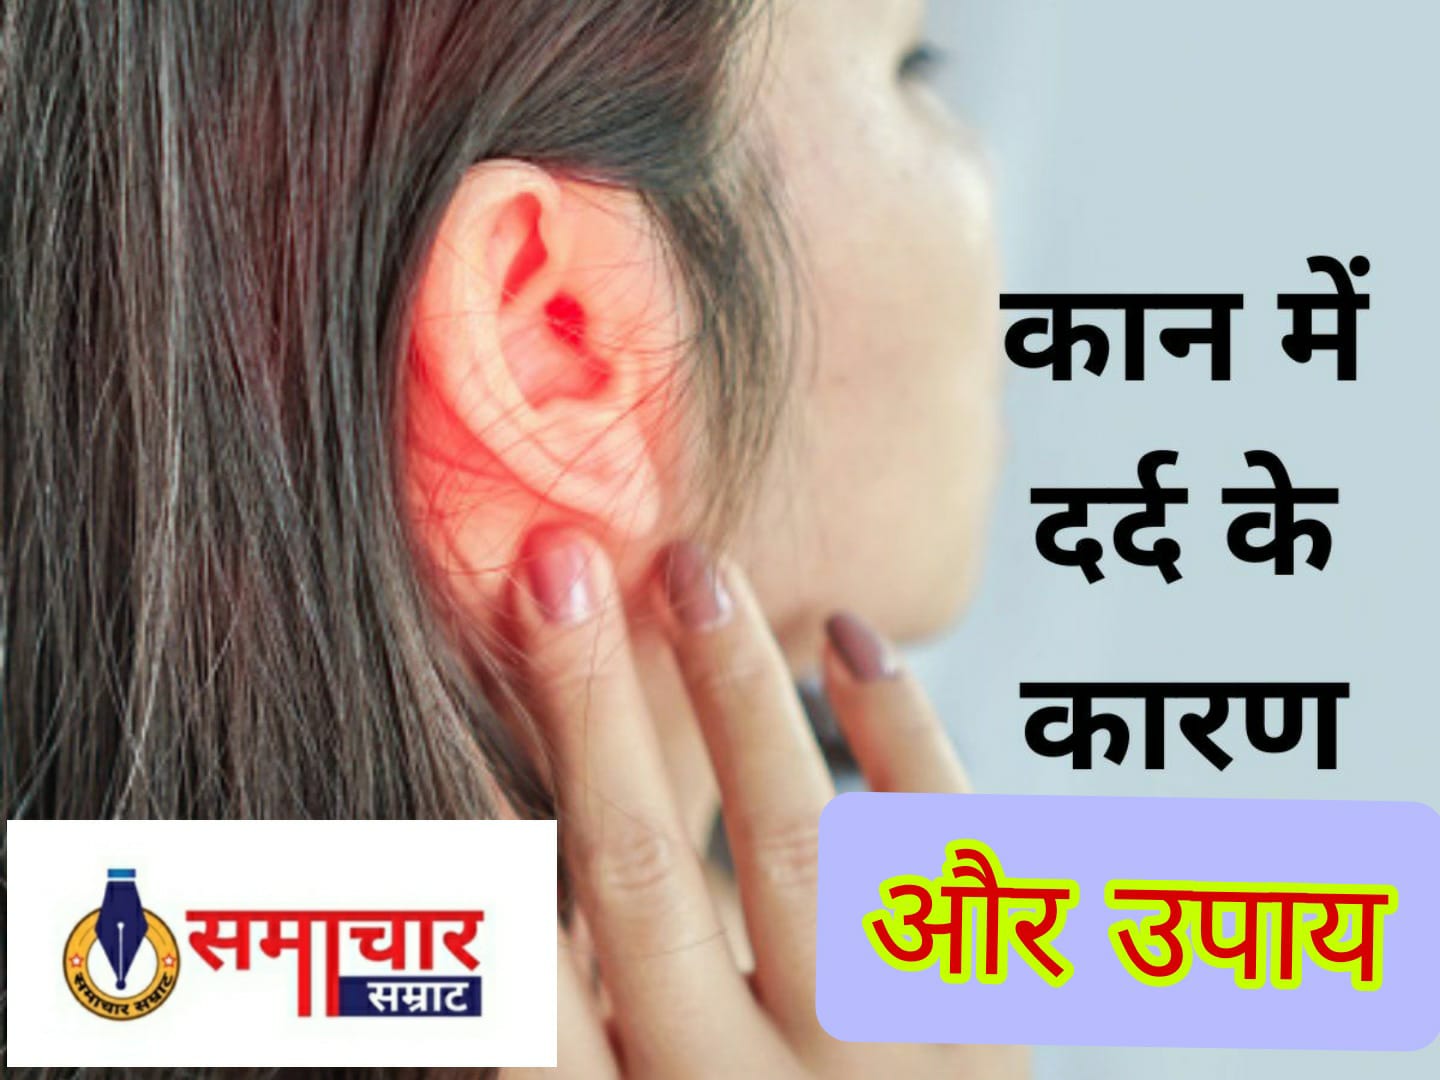 Ear Pain: आप भी कान के दर्द से रहते हैं परेशान तो अपनाइए इसे दुरुस्त करने के घरेलू उपाय